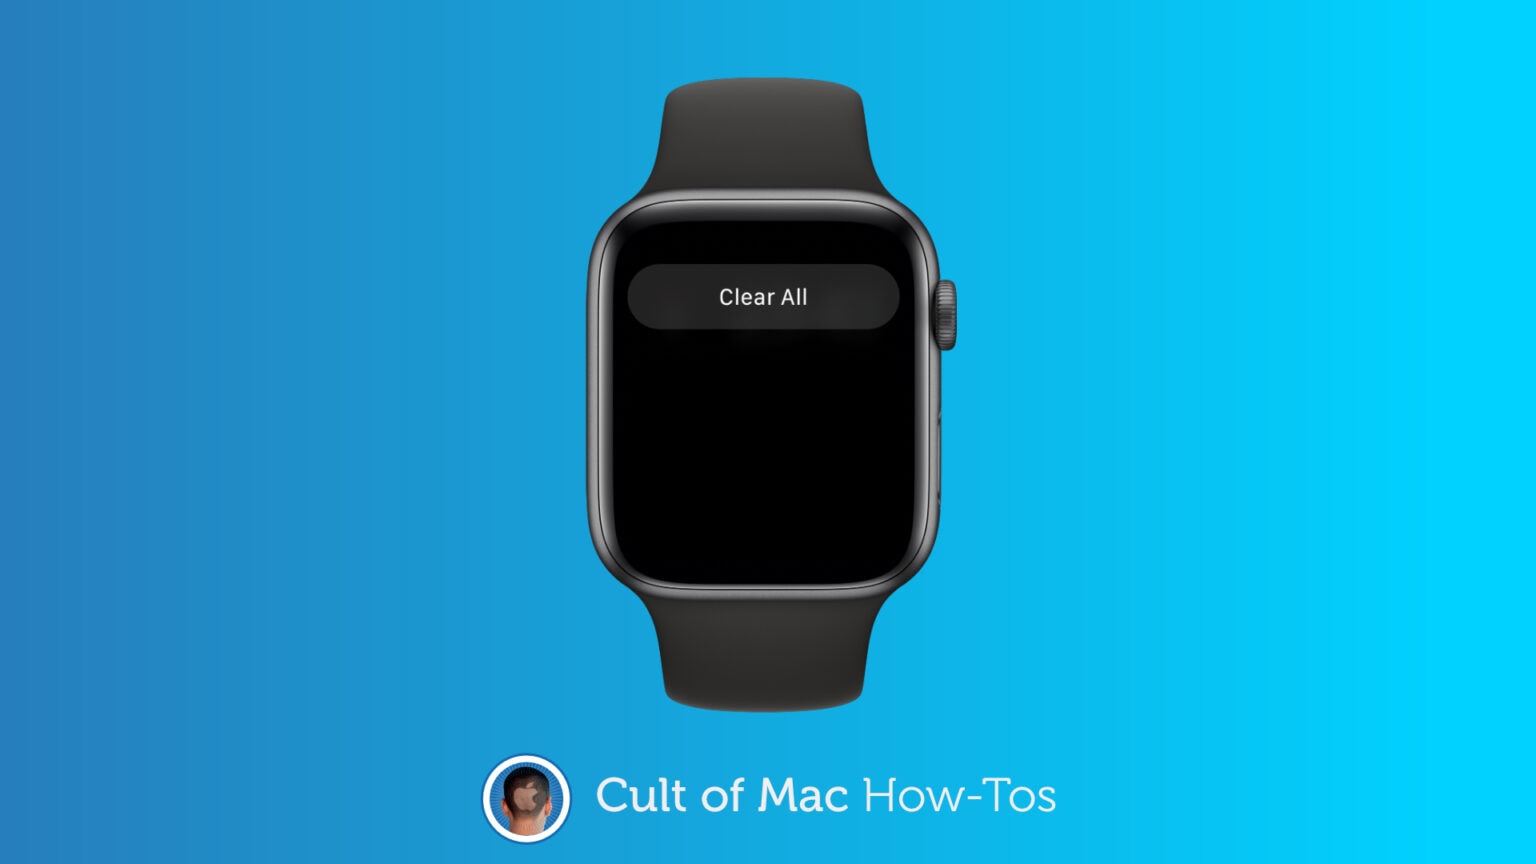 Clear Apple Watch notifications in watchOS 7